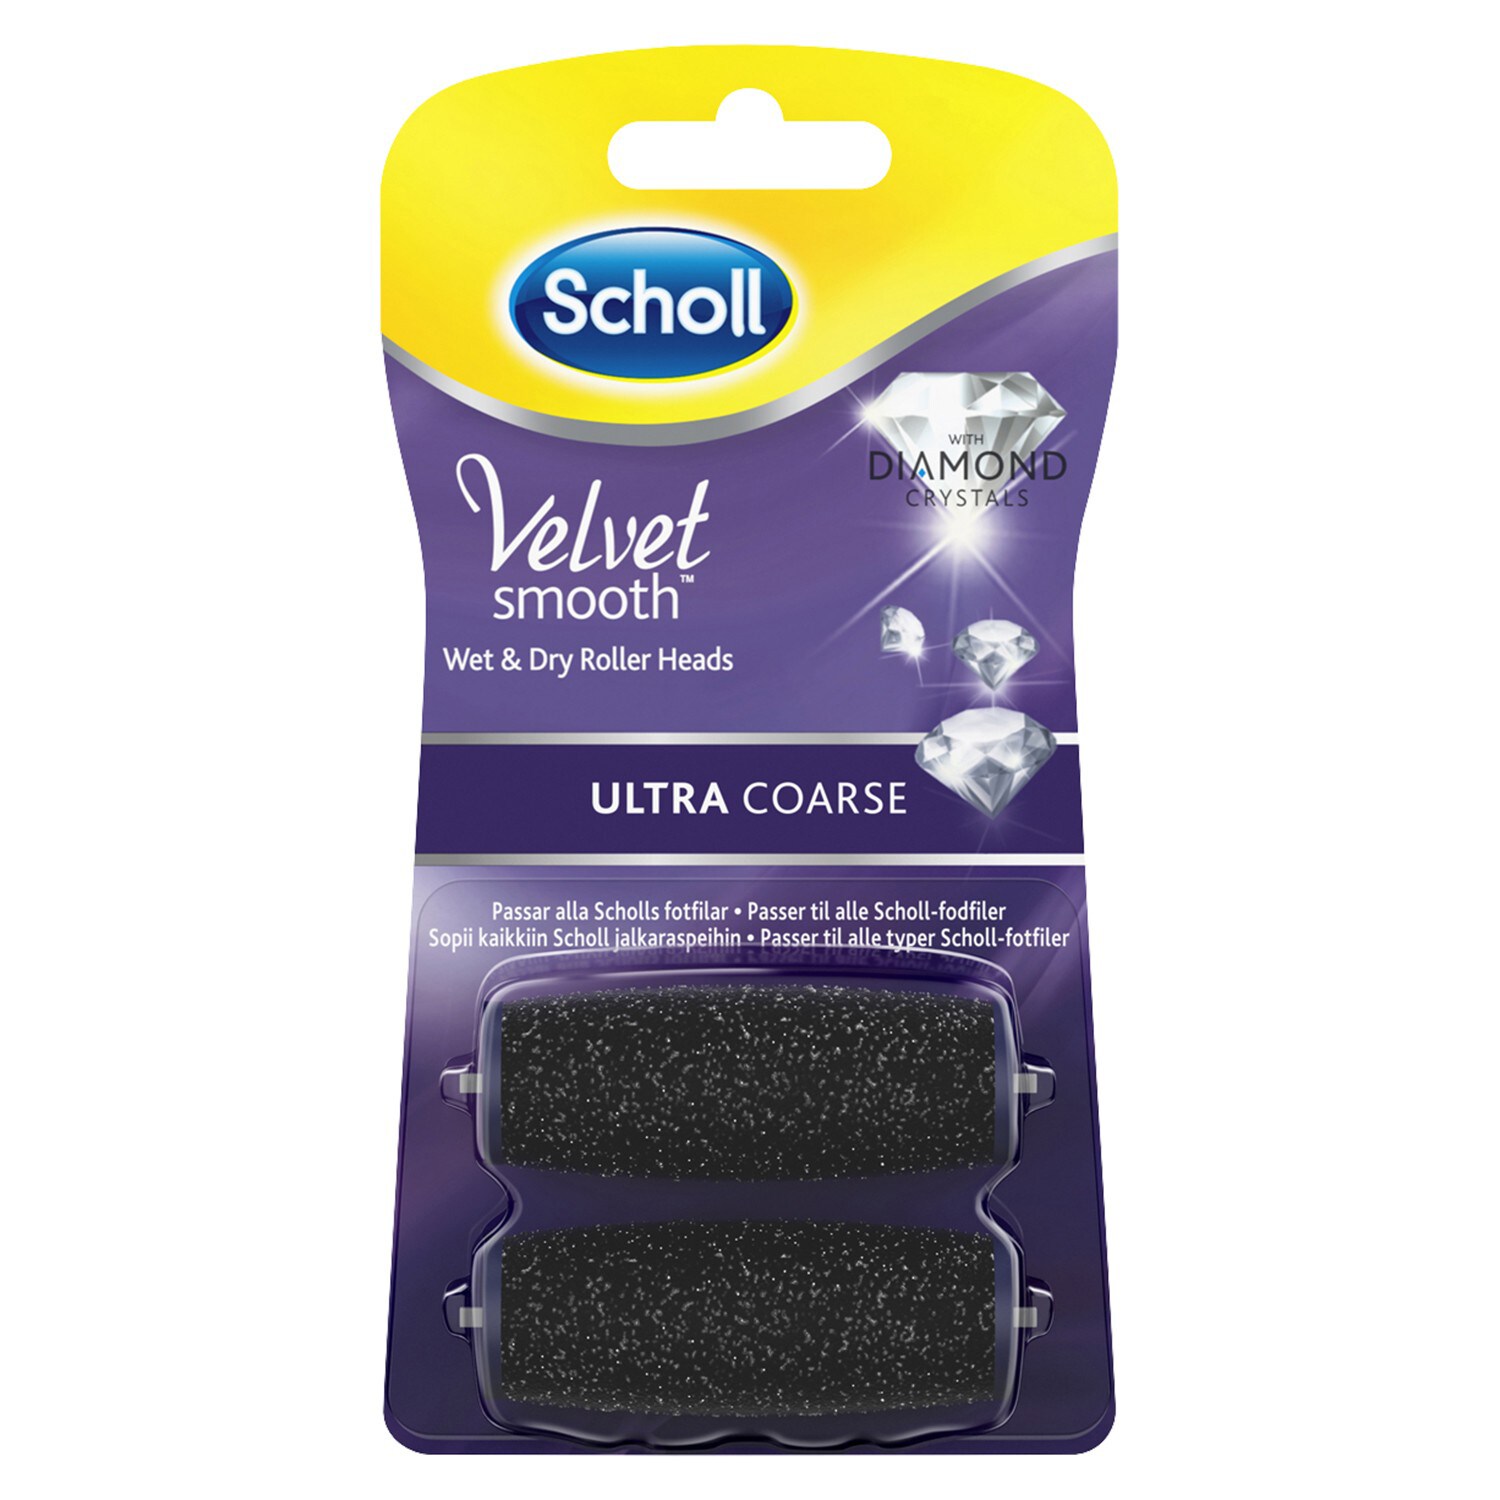 Scholl Velvet Smooth fodfil refill 3040498 - Manicure og pedicure ...